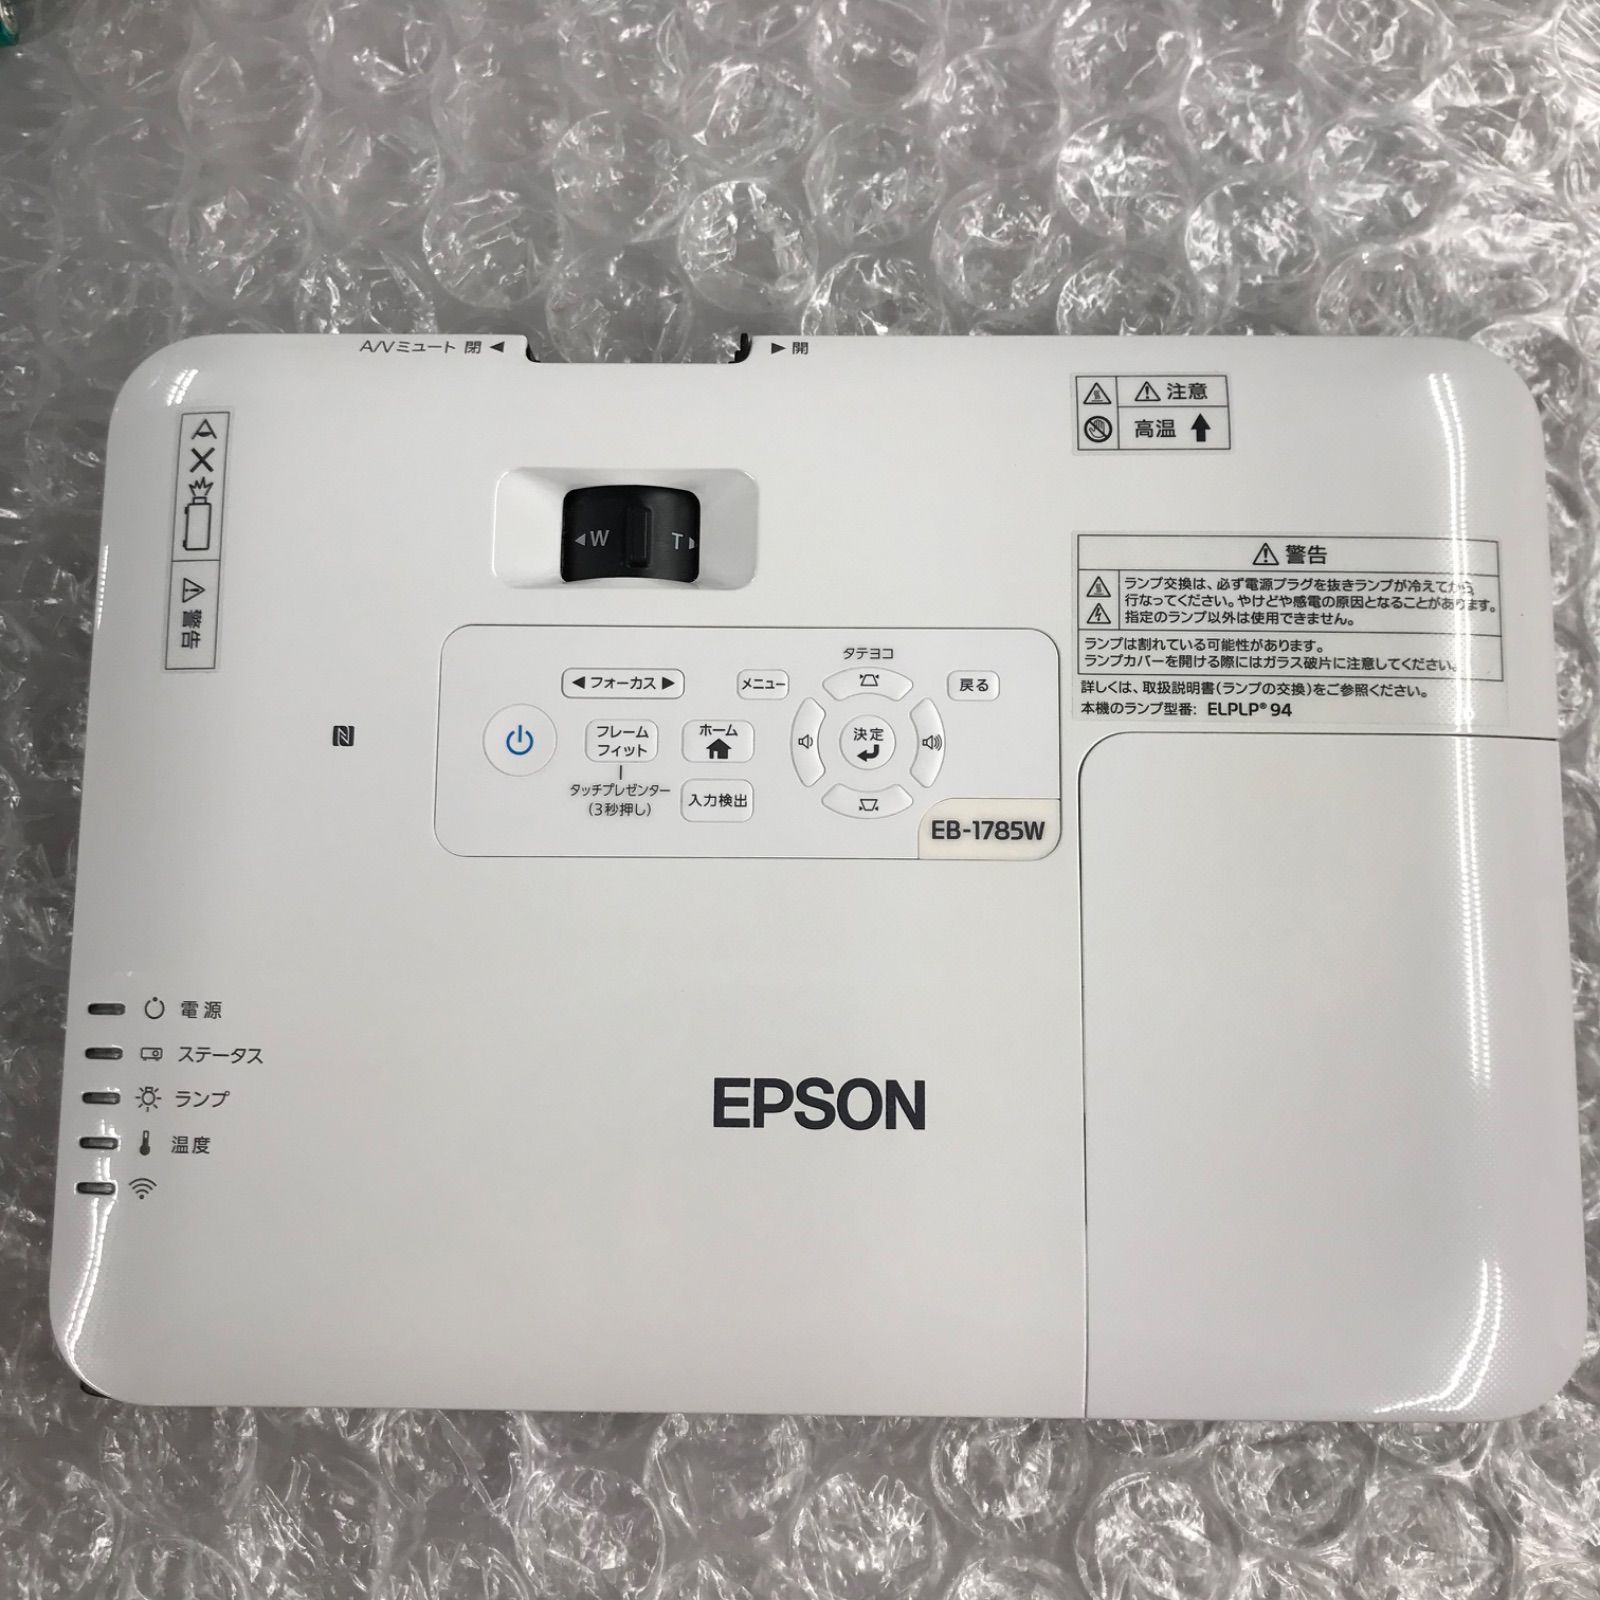 EPSON エプソン ビジネスプロジェクター EB-1785W - 中古パソコン販売